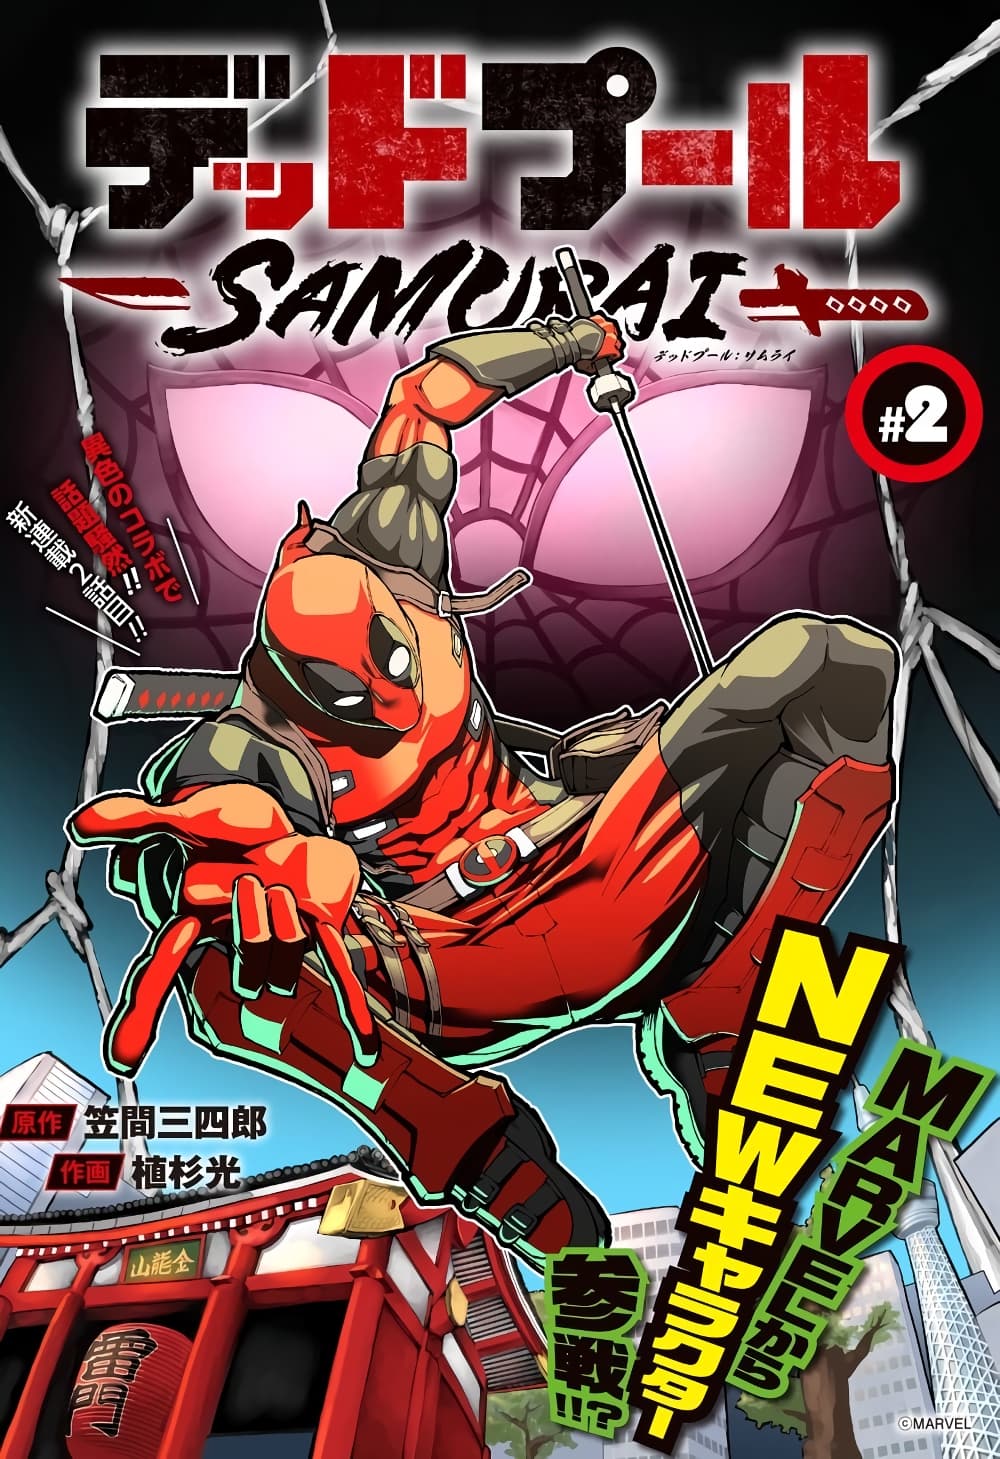 Deadpool: Samurai 2-2